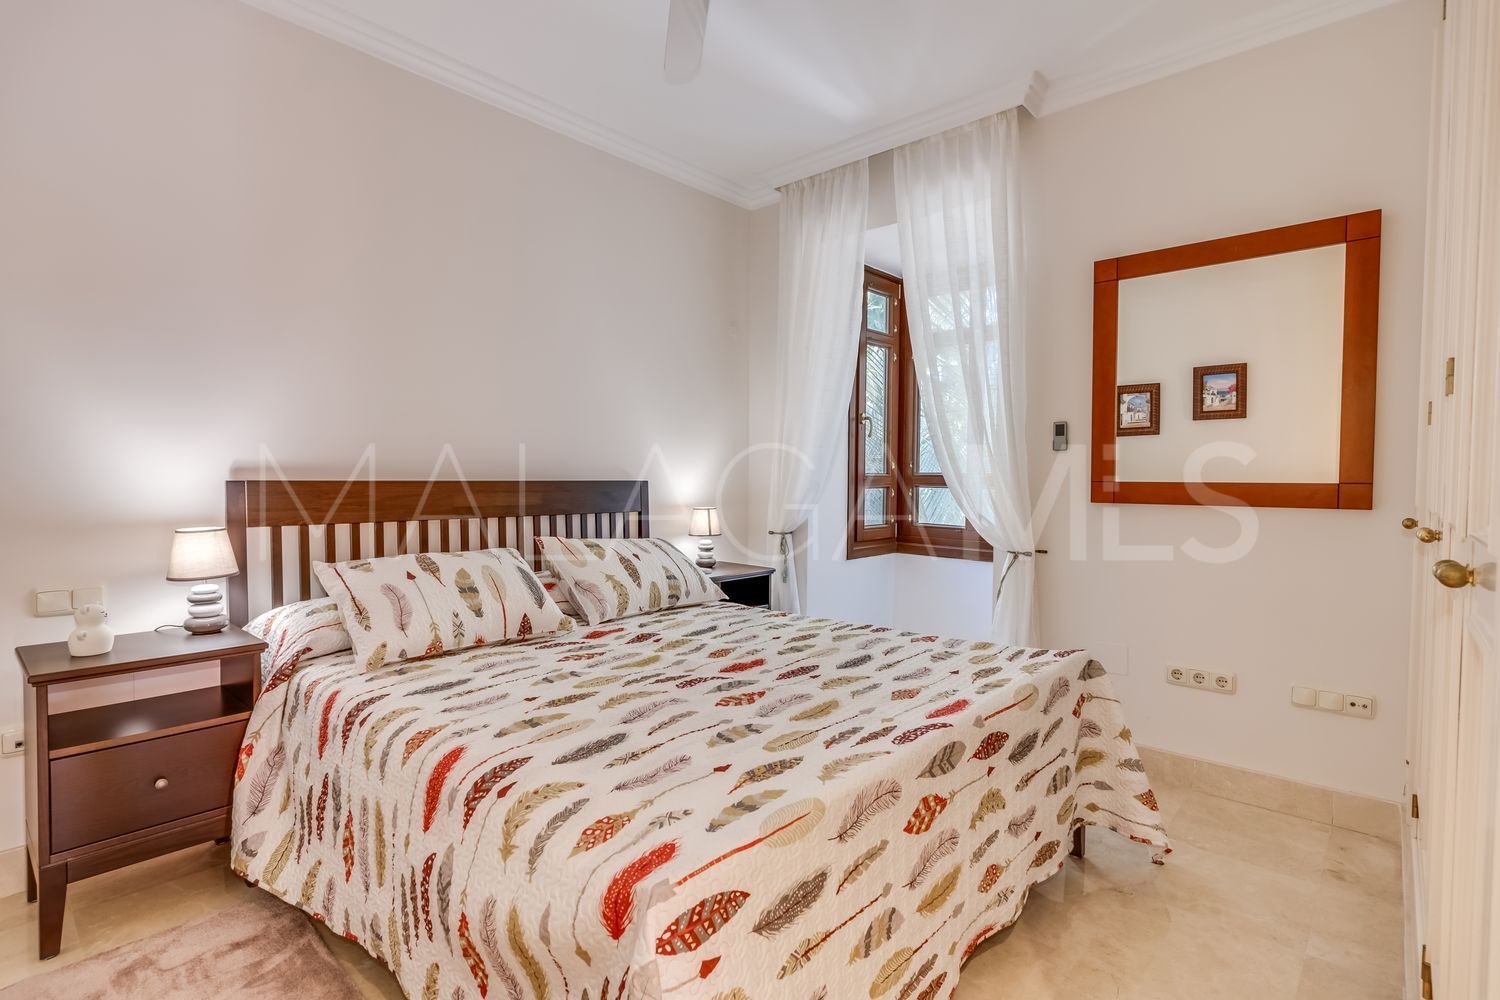 3 bedrooms flat for sale in Cortijo Blanco